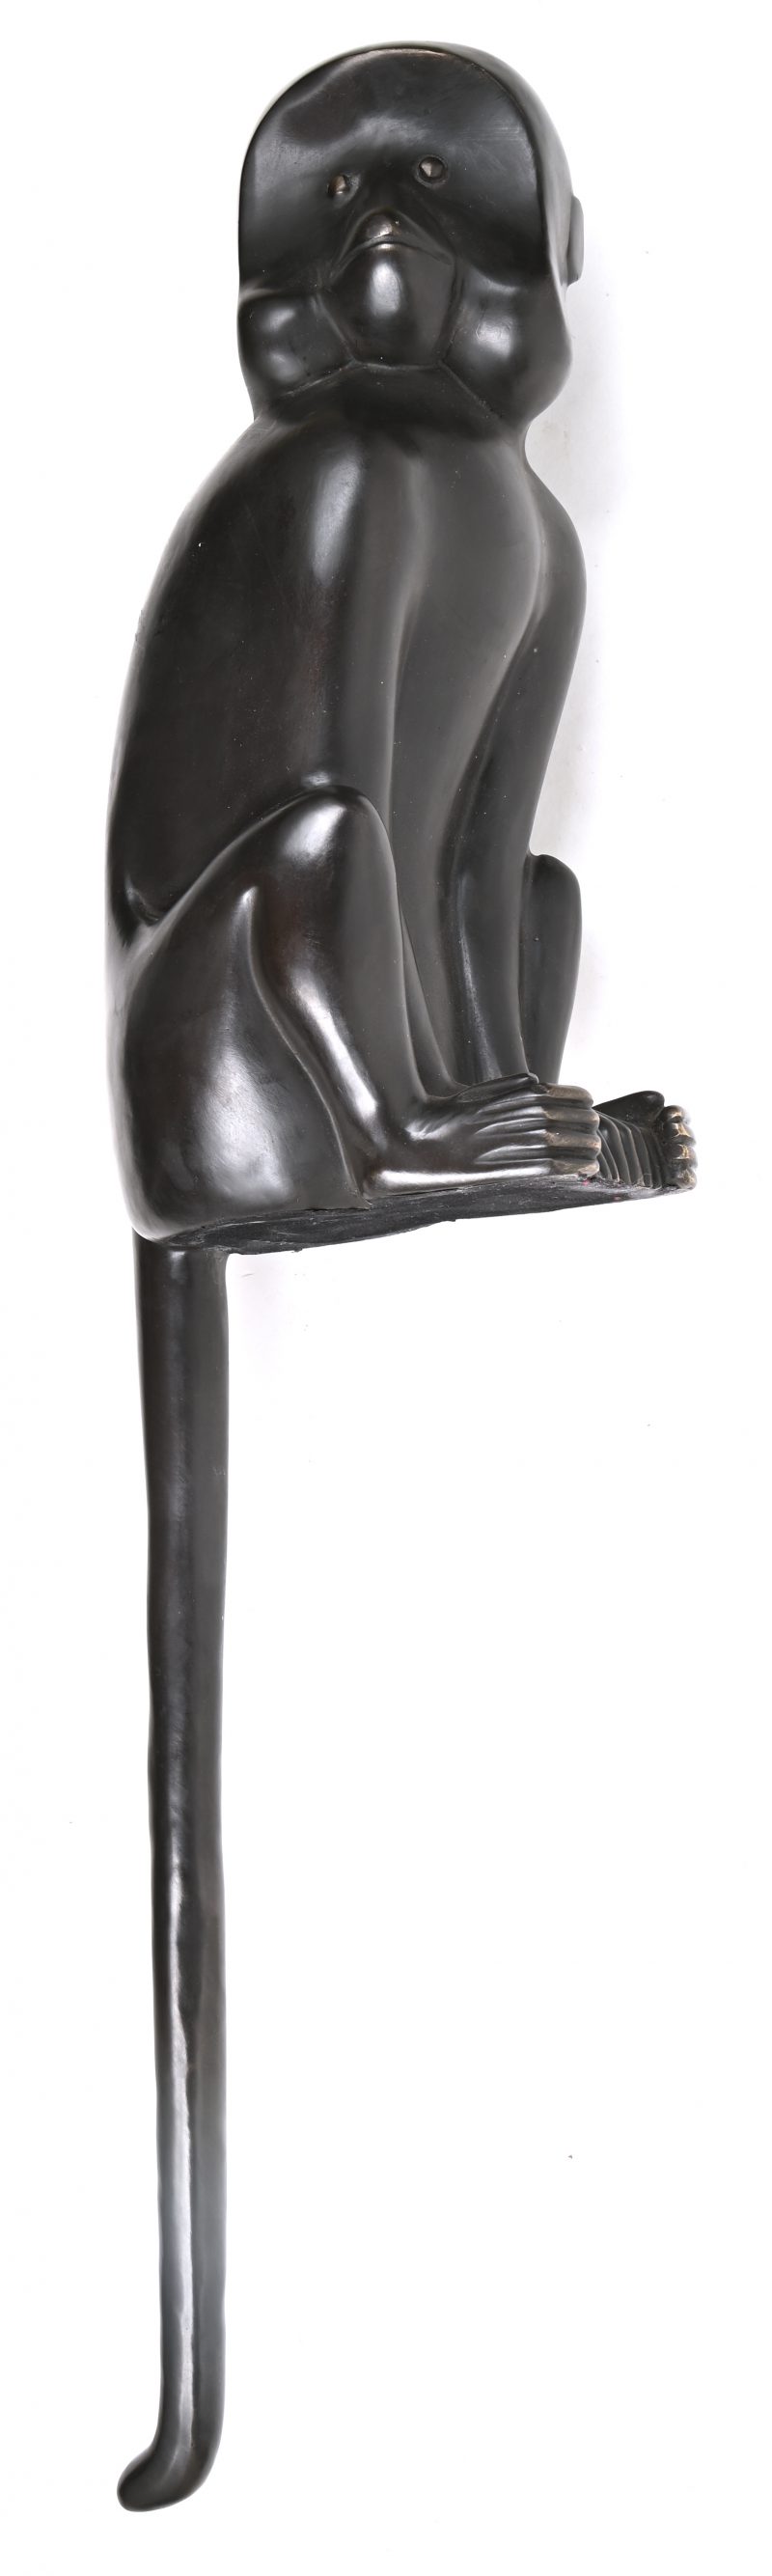 Een bronzen beeld van een aap , gemaakt om op de rand van de tafel of kast te zetten met de staart neerwaarts gericht.